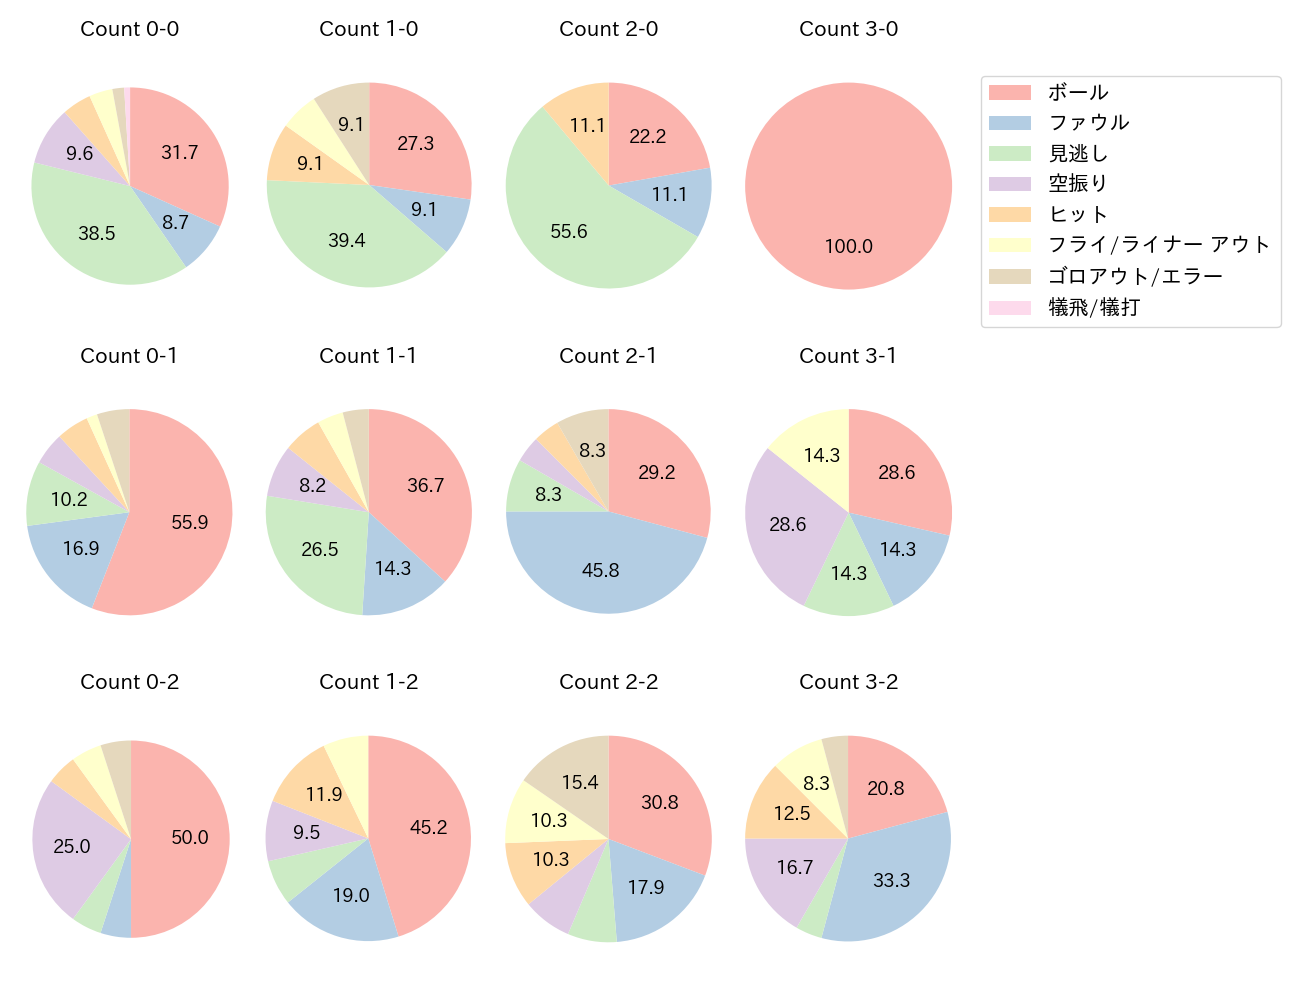 松原 聖弥の球数分布(2021年9月)